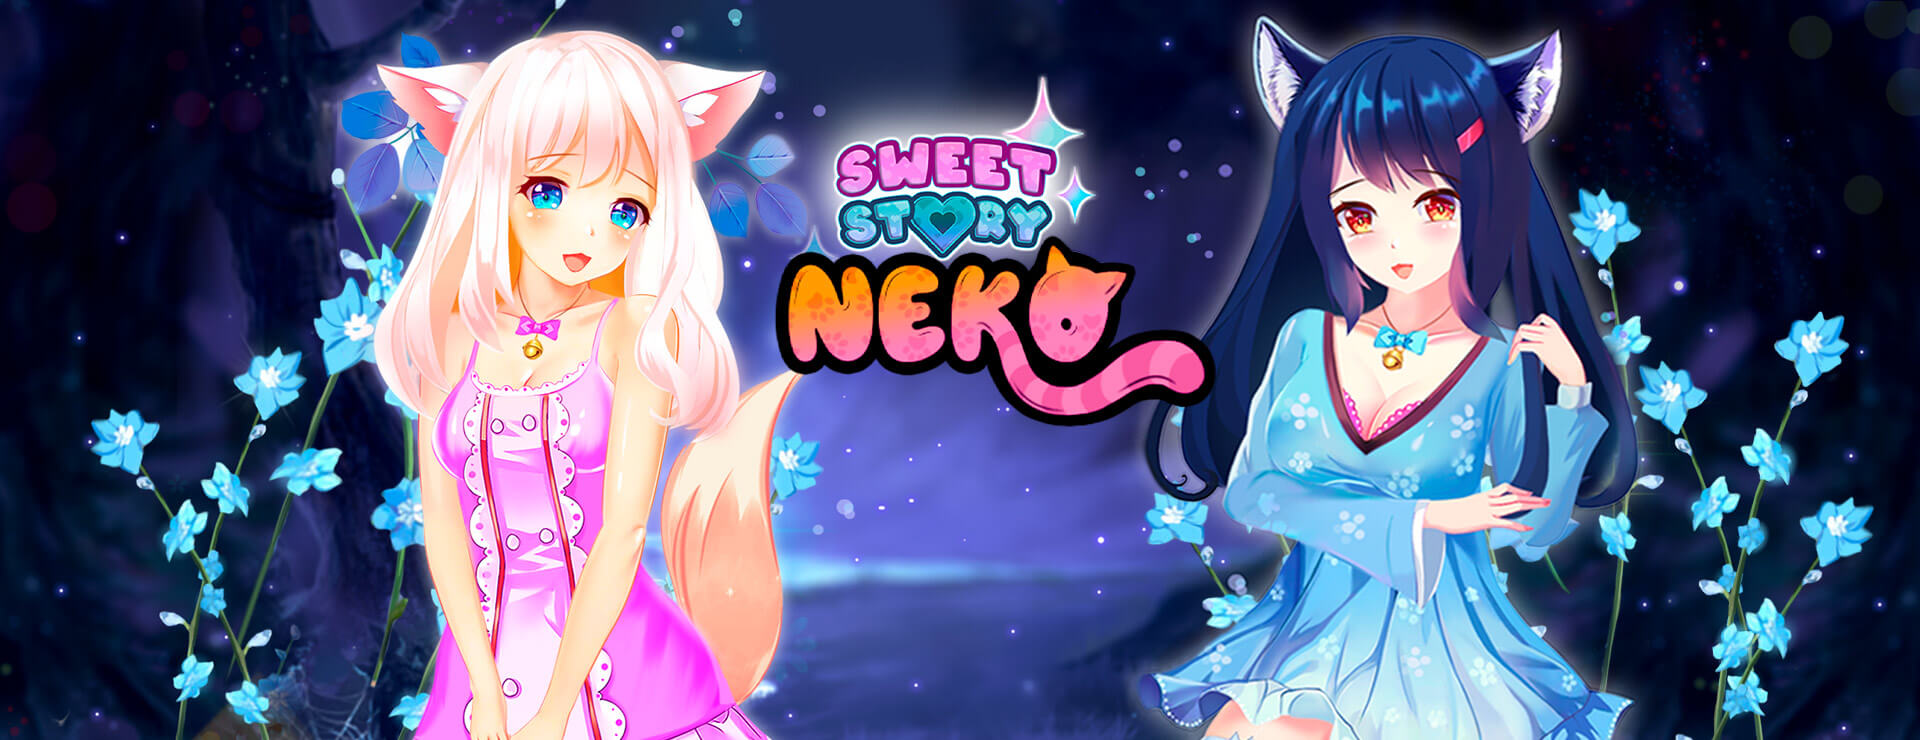 Sweet Story Neko - Zwanglos  Spiel